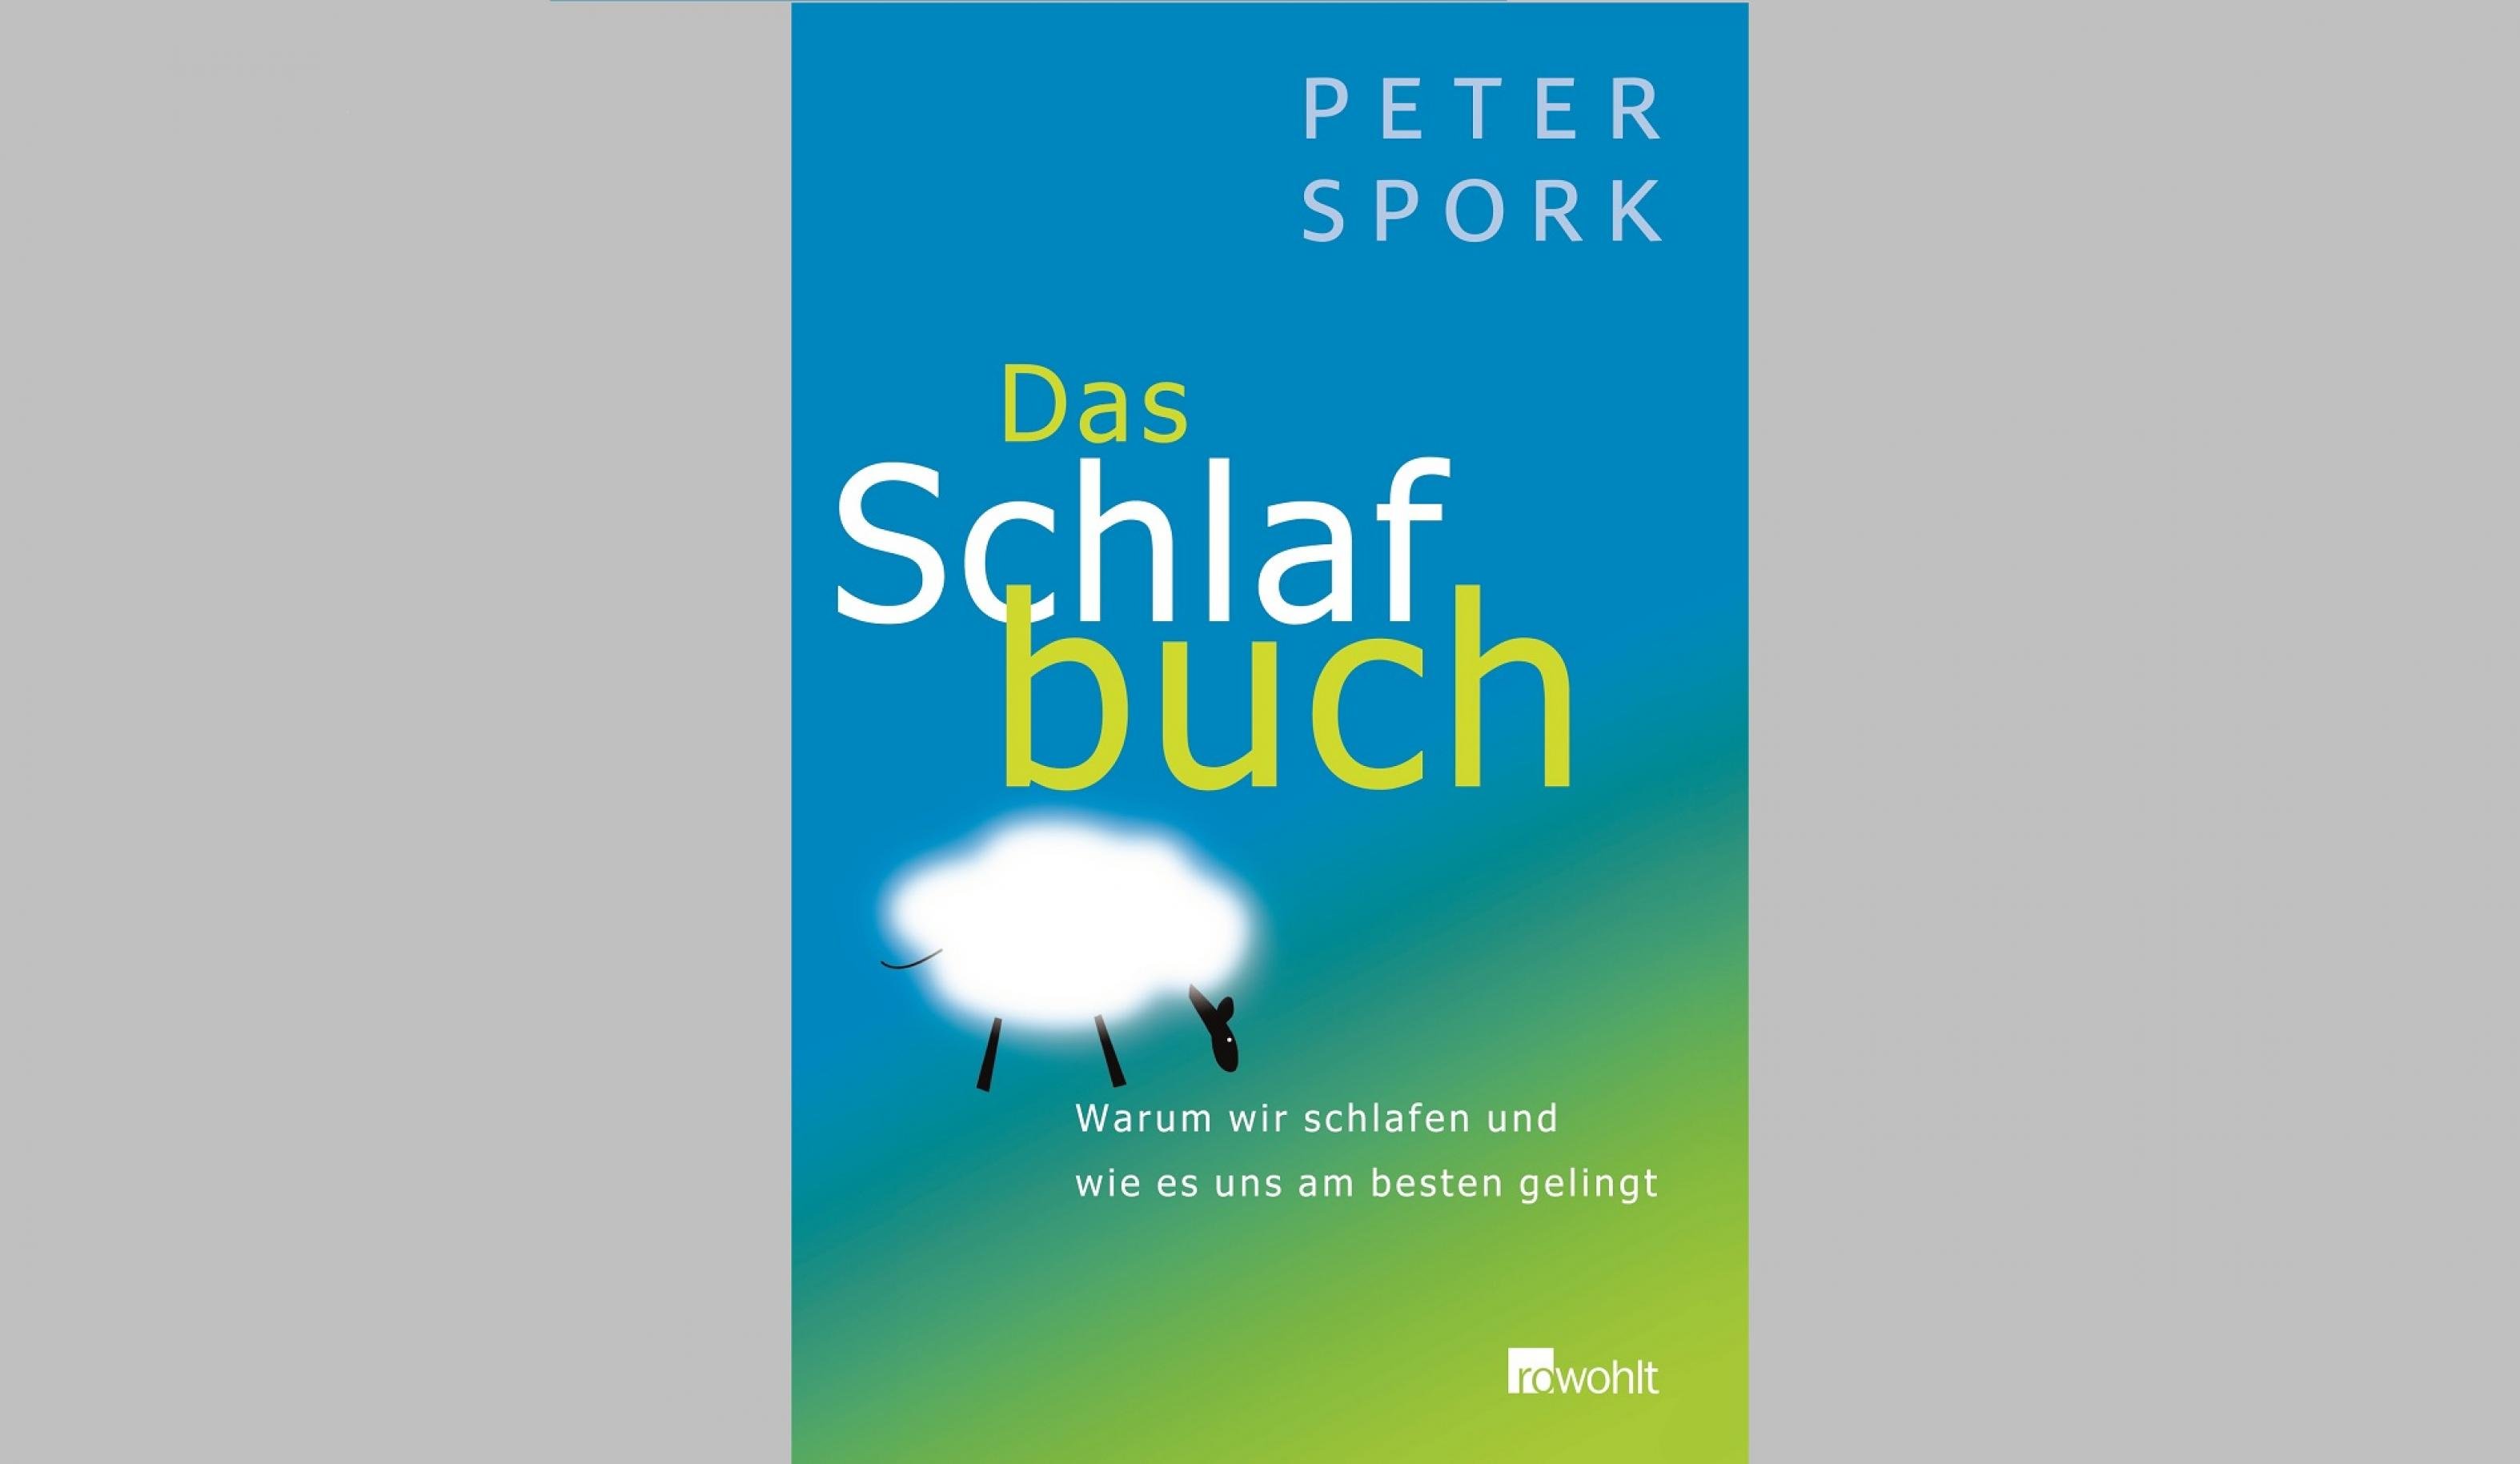 Buchtitel von Peter Sporks Buch „Das Schlafbuch“, erstmals erschienen 2007 im Rowohlt-Verlag